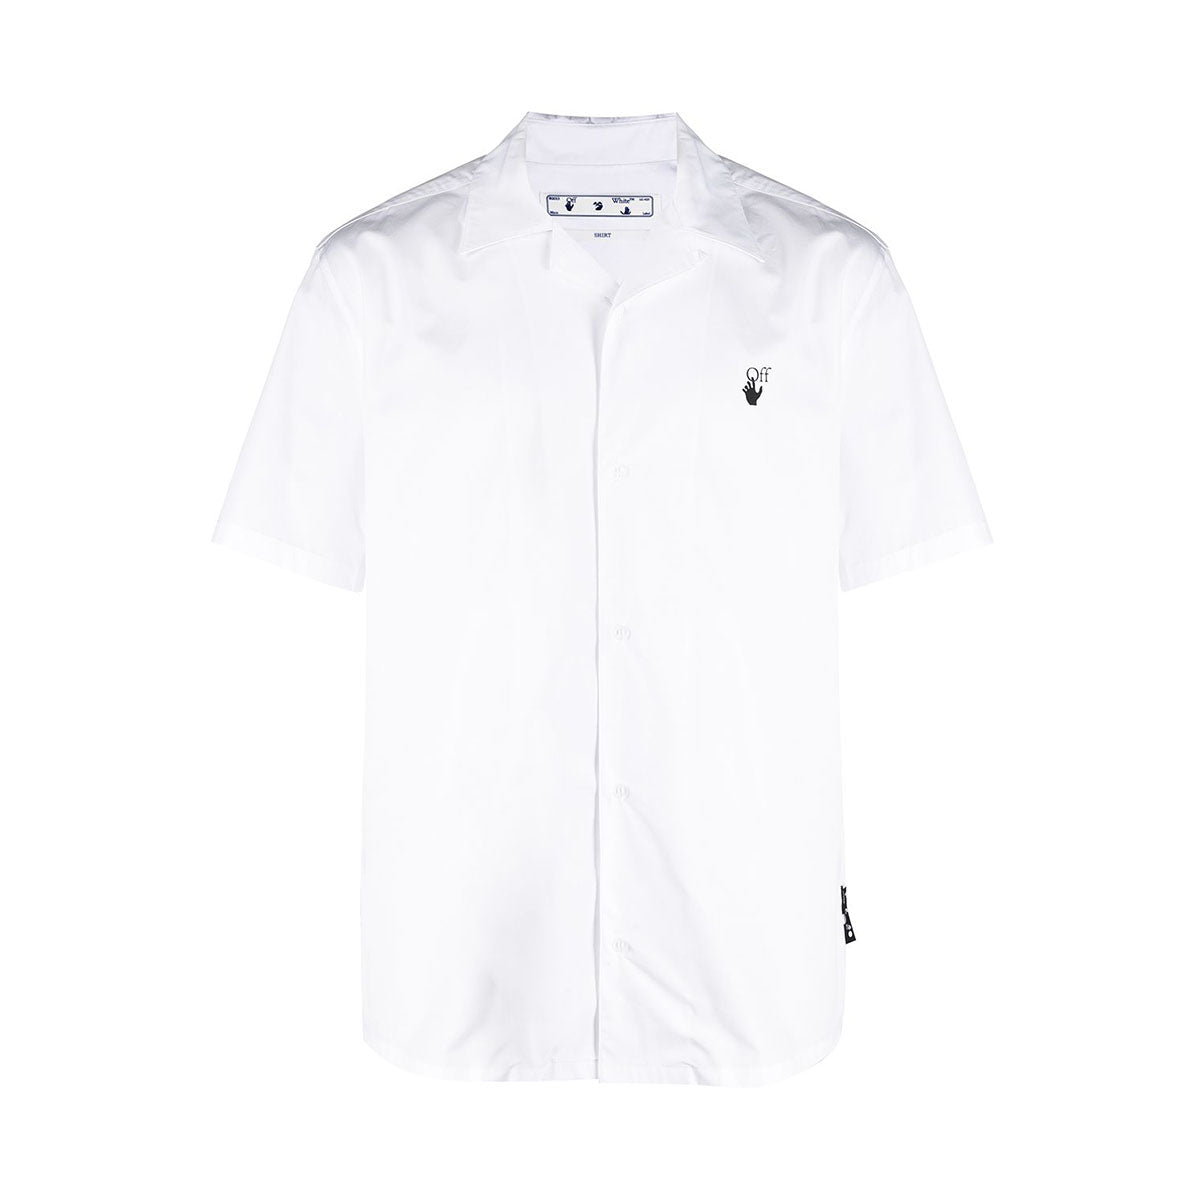 Off white short sleeve shirt in white